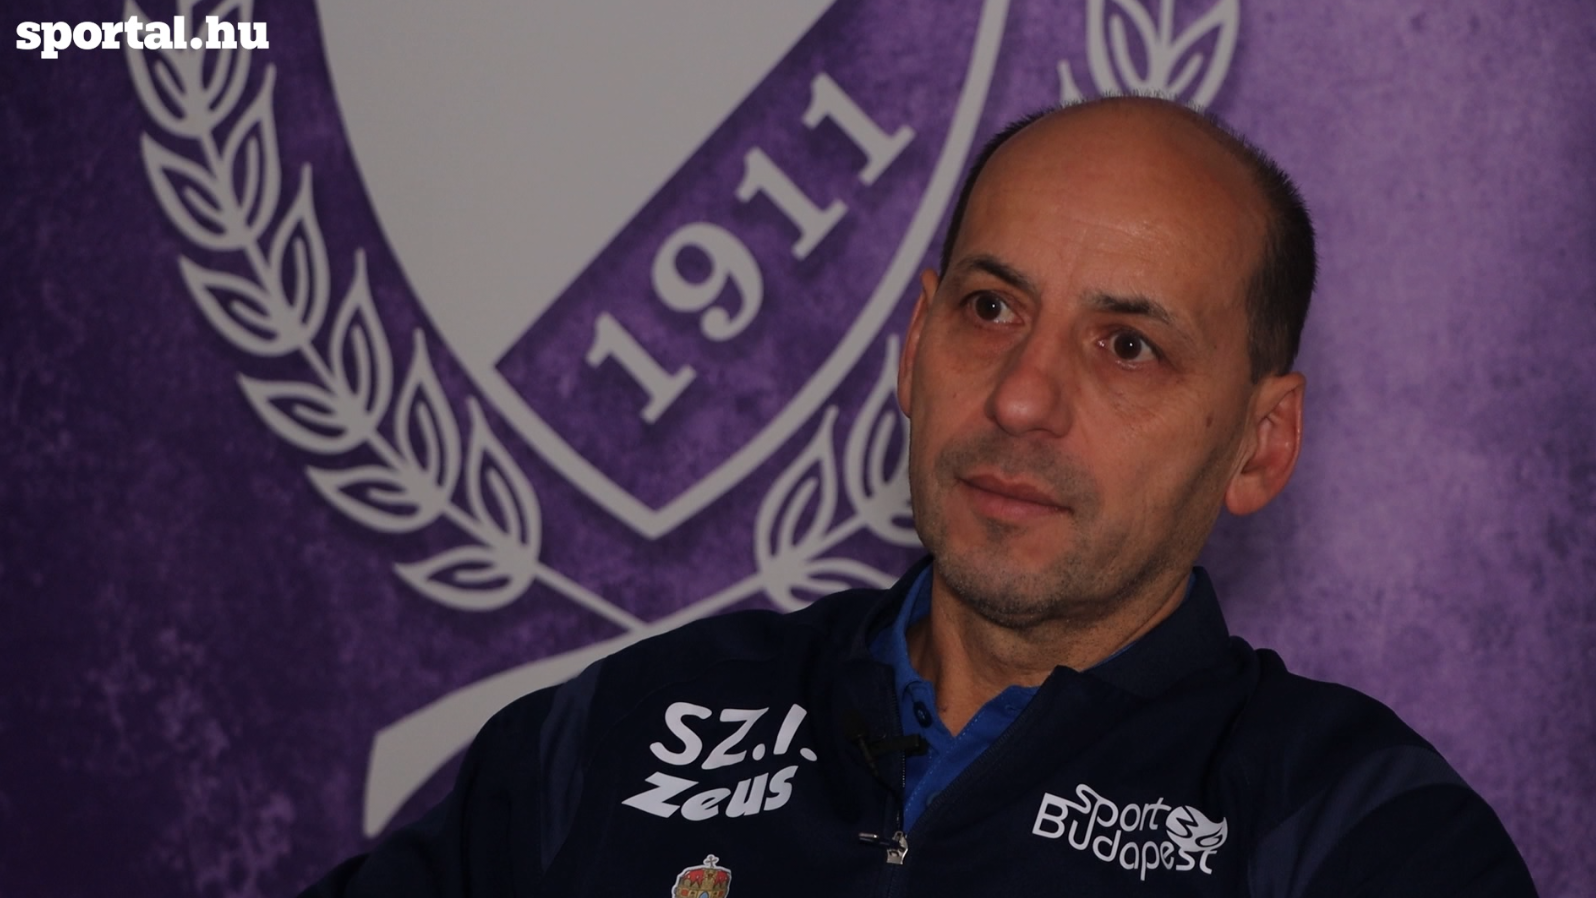 „El tudnék képzelni légióst a csapatban, de szívesebben foglalkozom magyar játékosokkal” – interjú Szabó Istvánnal, a Kecskemét vezetőedzőjével